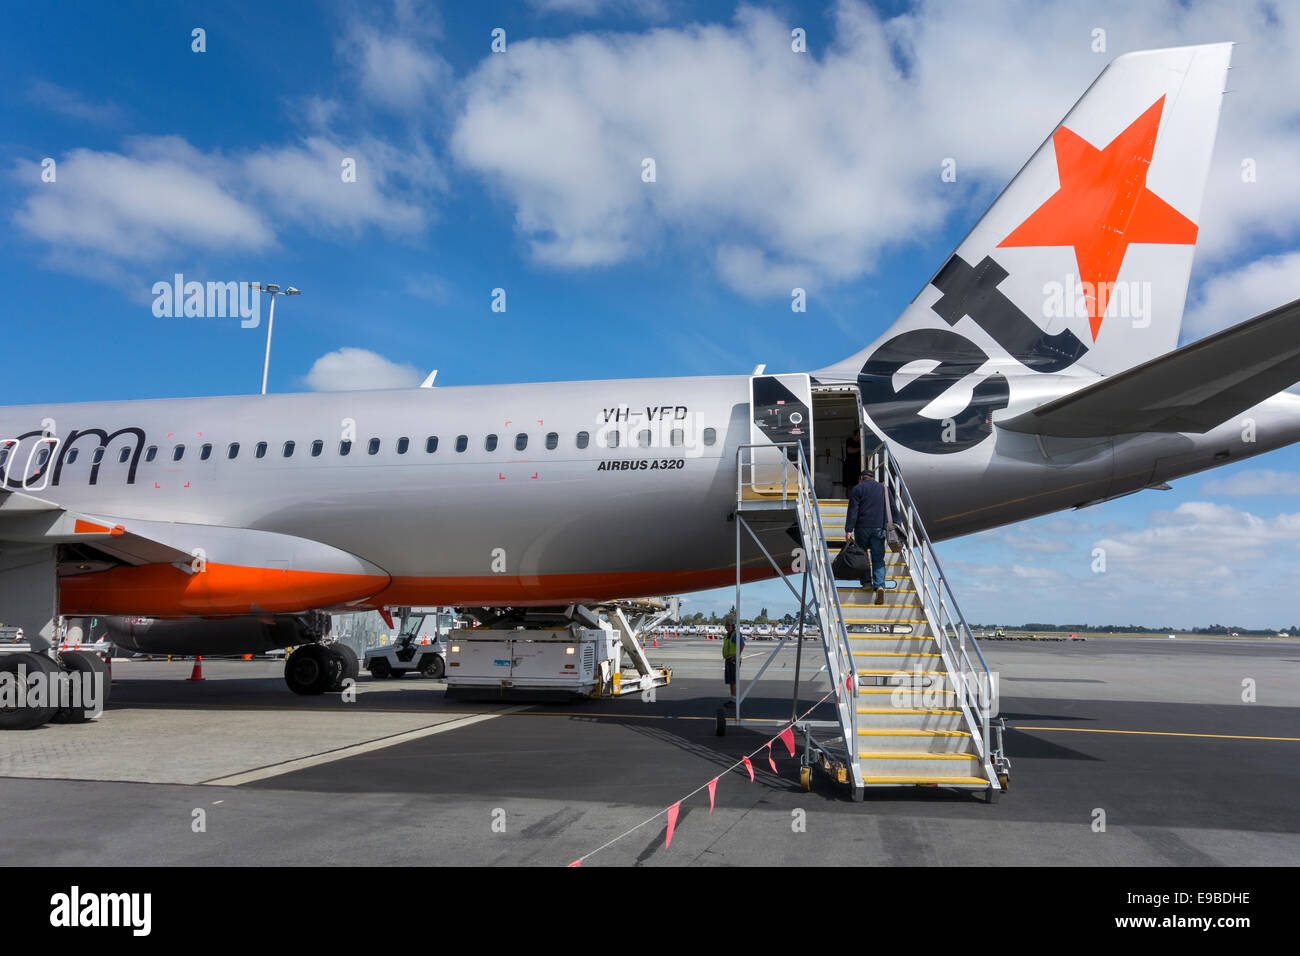 Un Jetstar320 à l'Aéroport de Christchurch. Seul un d'embarquement des passagers à l'aide d'avion Jetstar une rampe d'escalier d'embarquement Banque D'Images